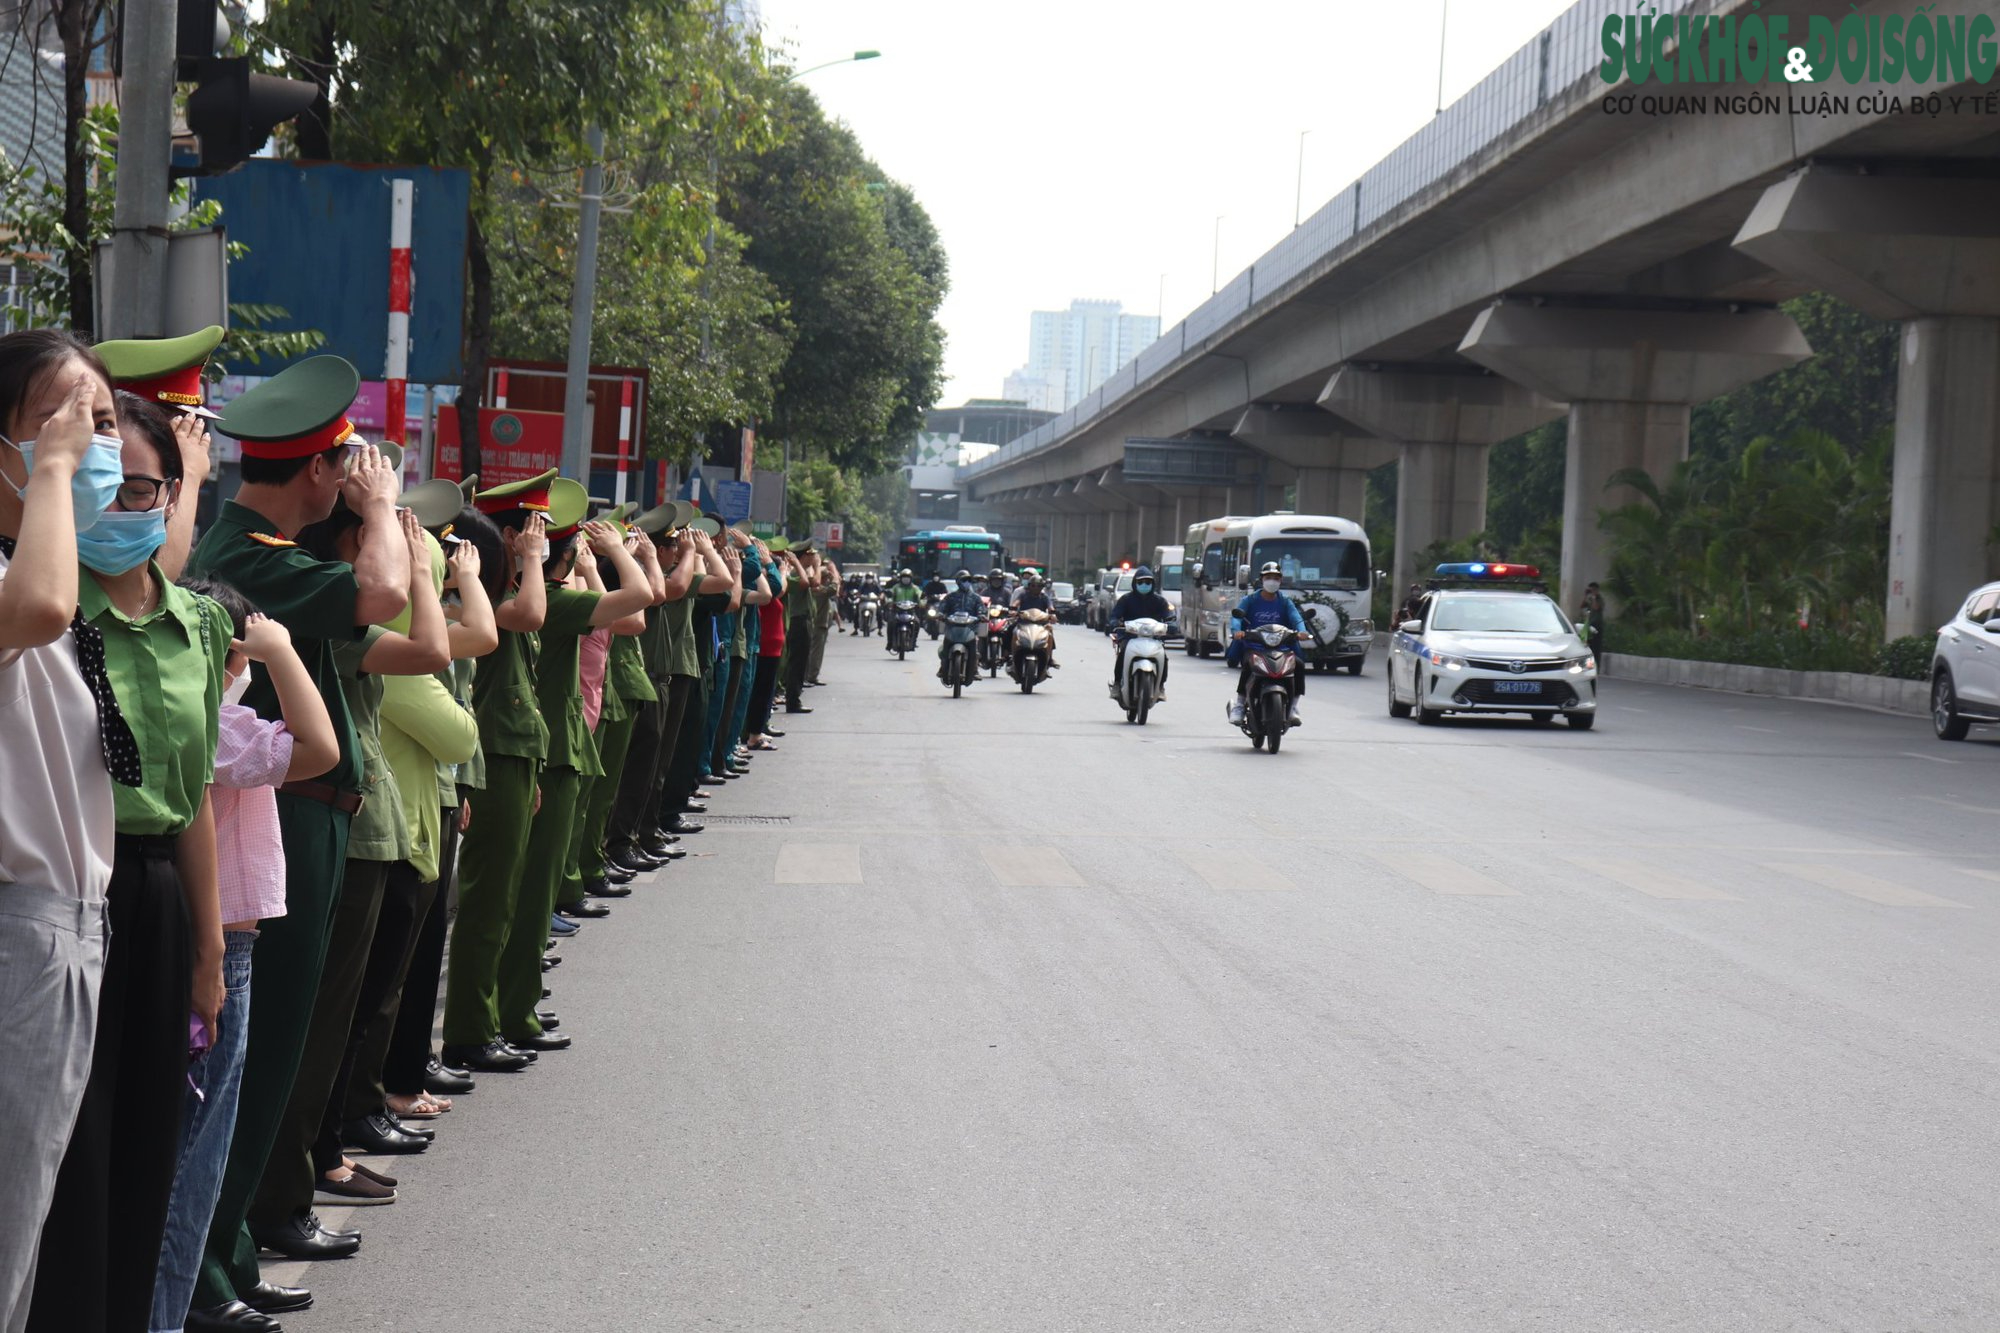 Đồng đội, người dân chào tiễn biệt 3 chiến sĩ Cảnh sát PCCC trên đường - Ảnh 10.